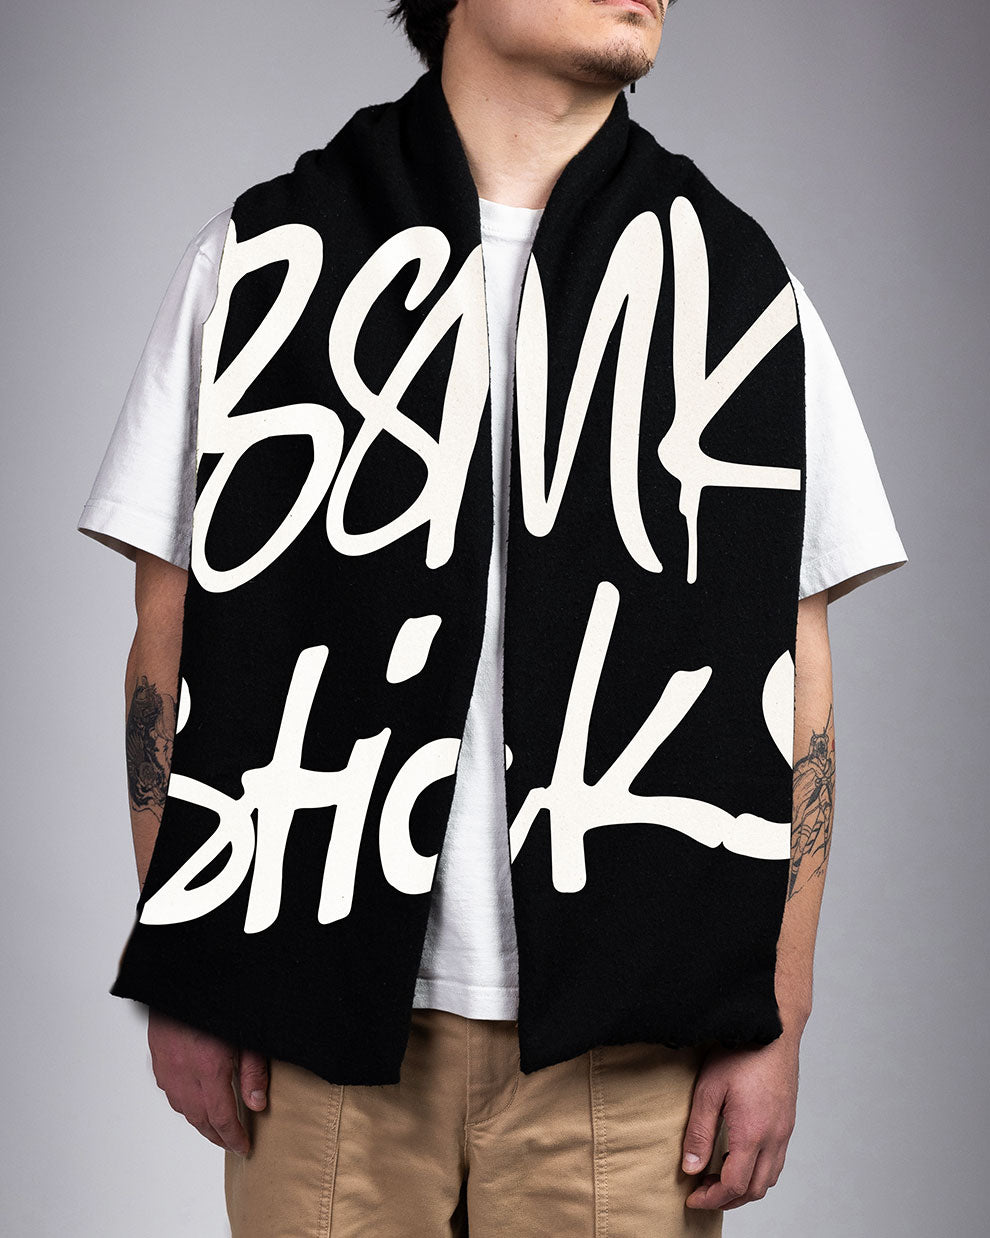 BSMK&STICKS Premium oversized sjaal - Zwart / Wit